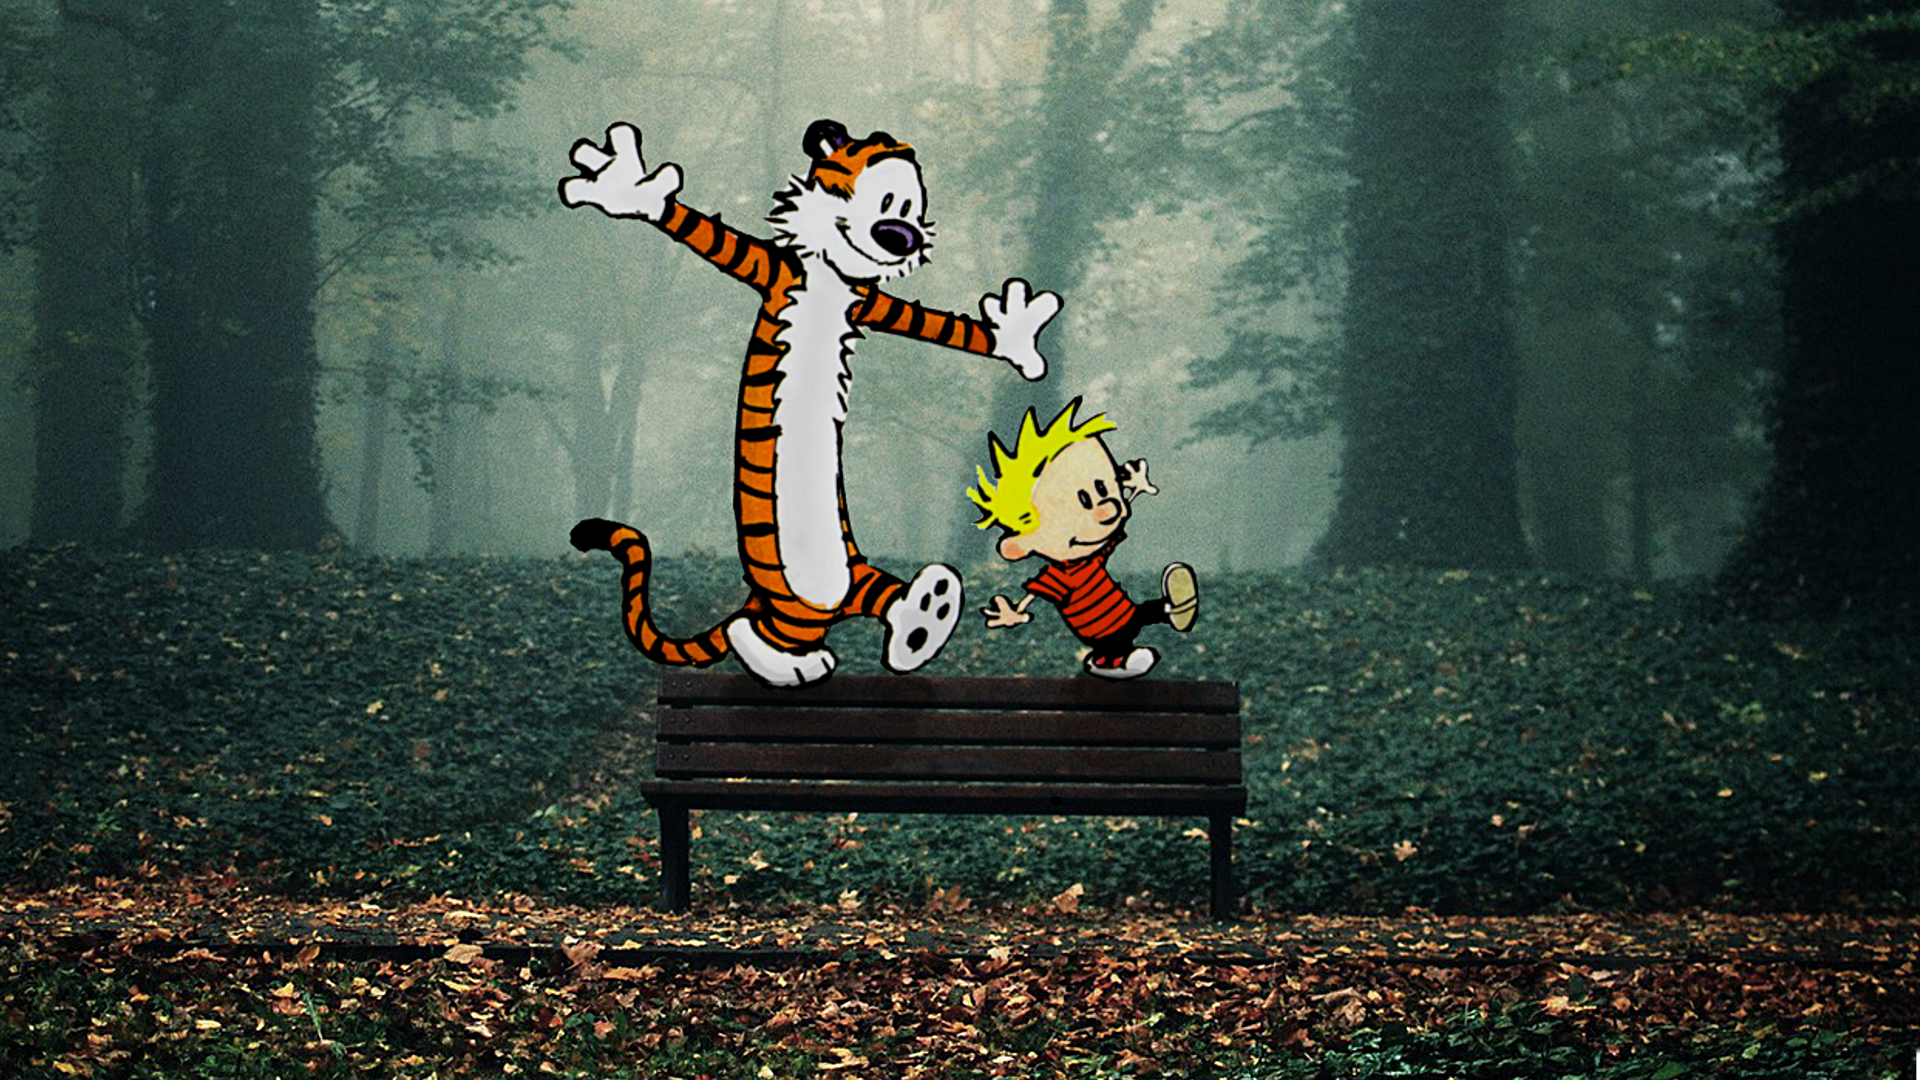 75+] Calvin And Hobbes Wallpaper - WallpaperSafari